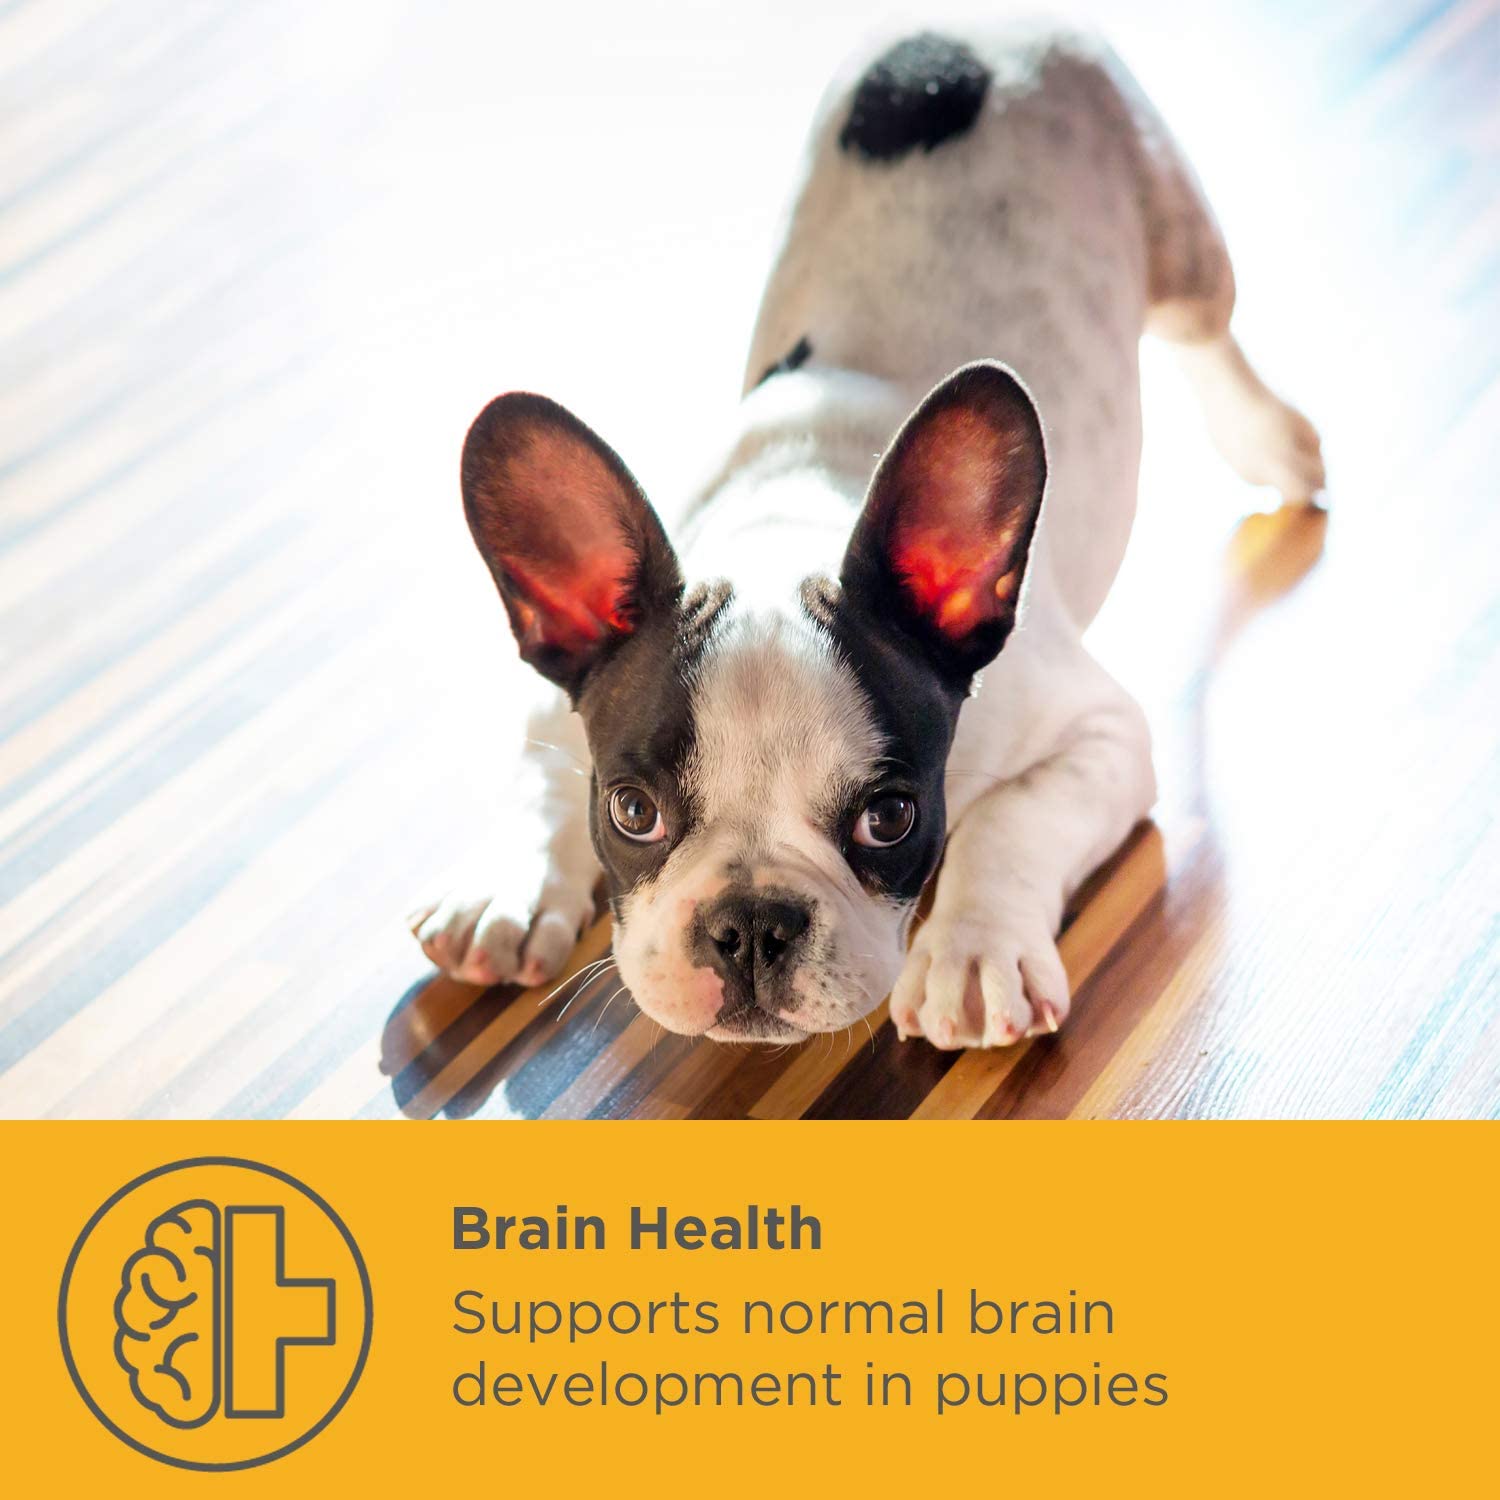  maxxidog - Suplemento Cachorros maxxipuppy para Cerebro y Huesos - Le Da a Tu Cachorro el Mejor Comienzo en la Vida - Perros Jóvenes - Ayuda en el Desarrollo en Etapas Tempranas - En Polvo 180g 